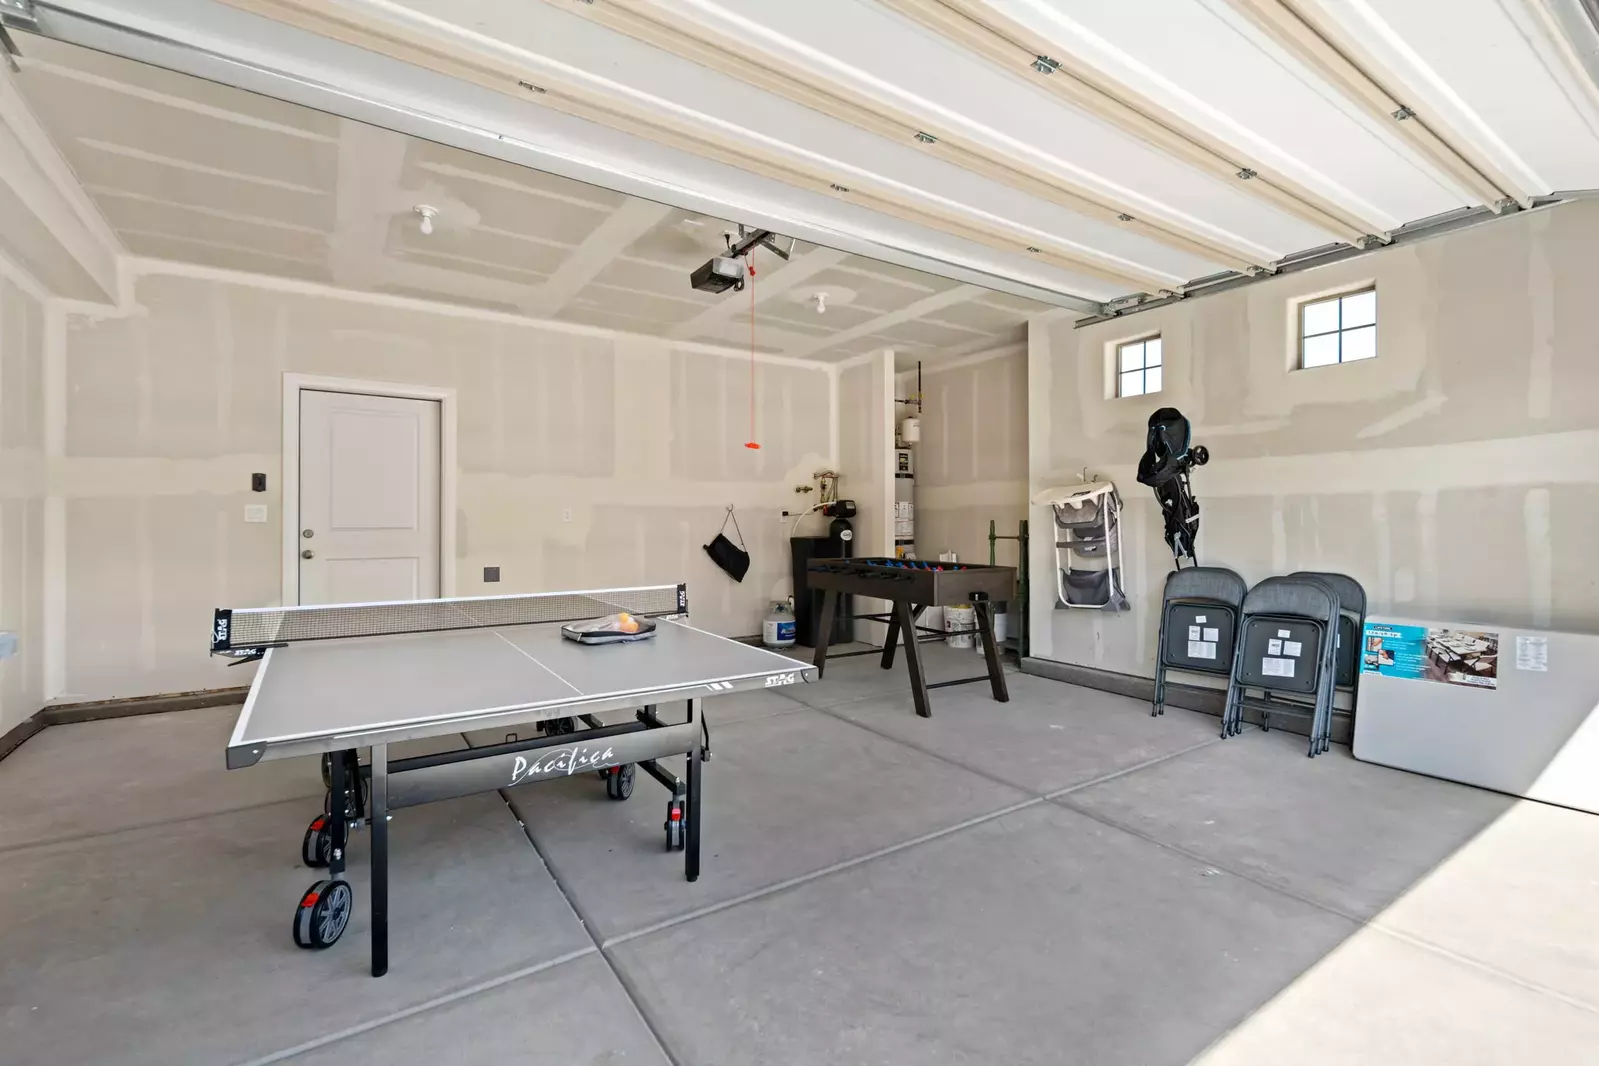 Garage - Ping Pong Table / Sunnyslope 2